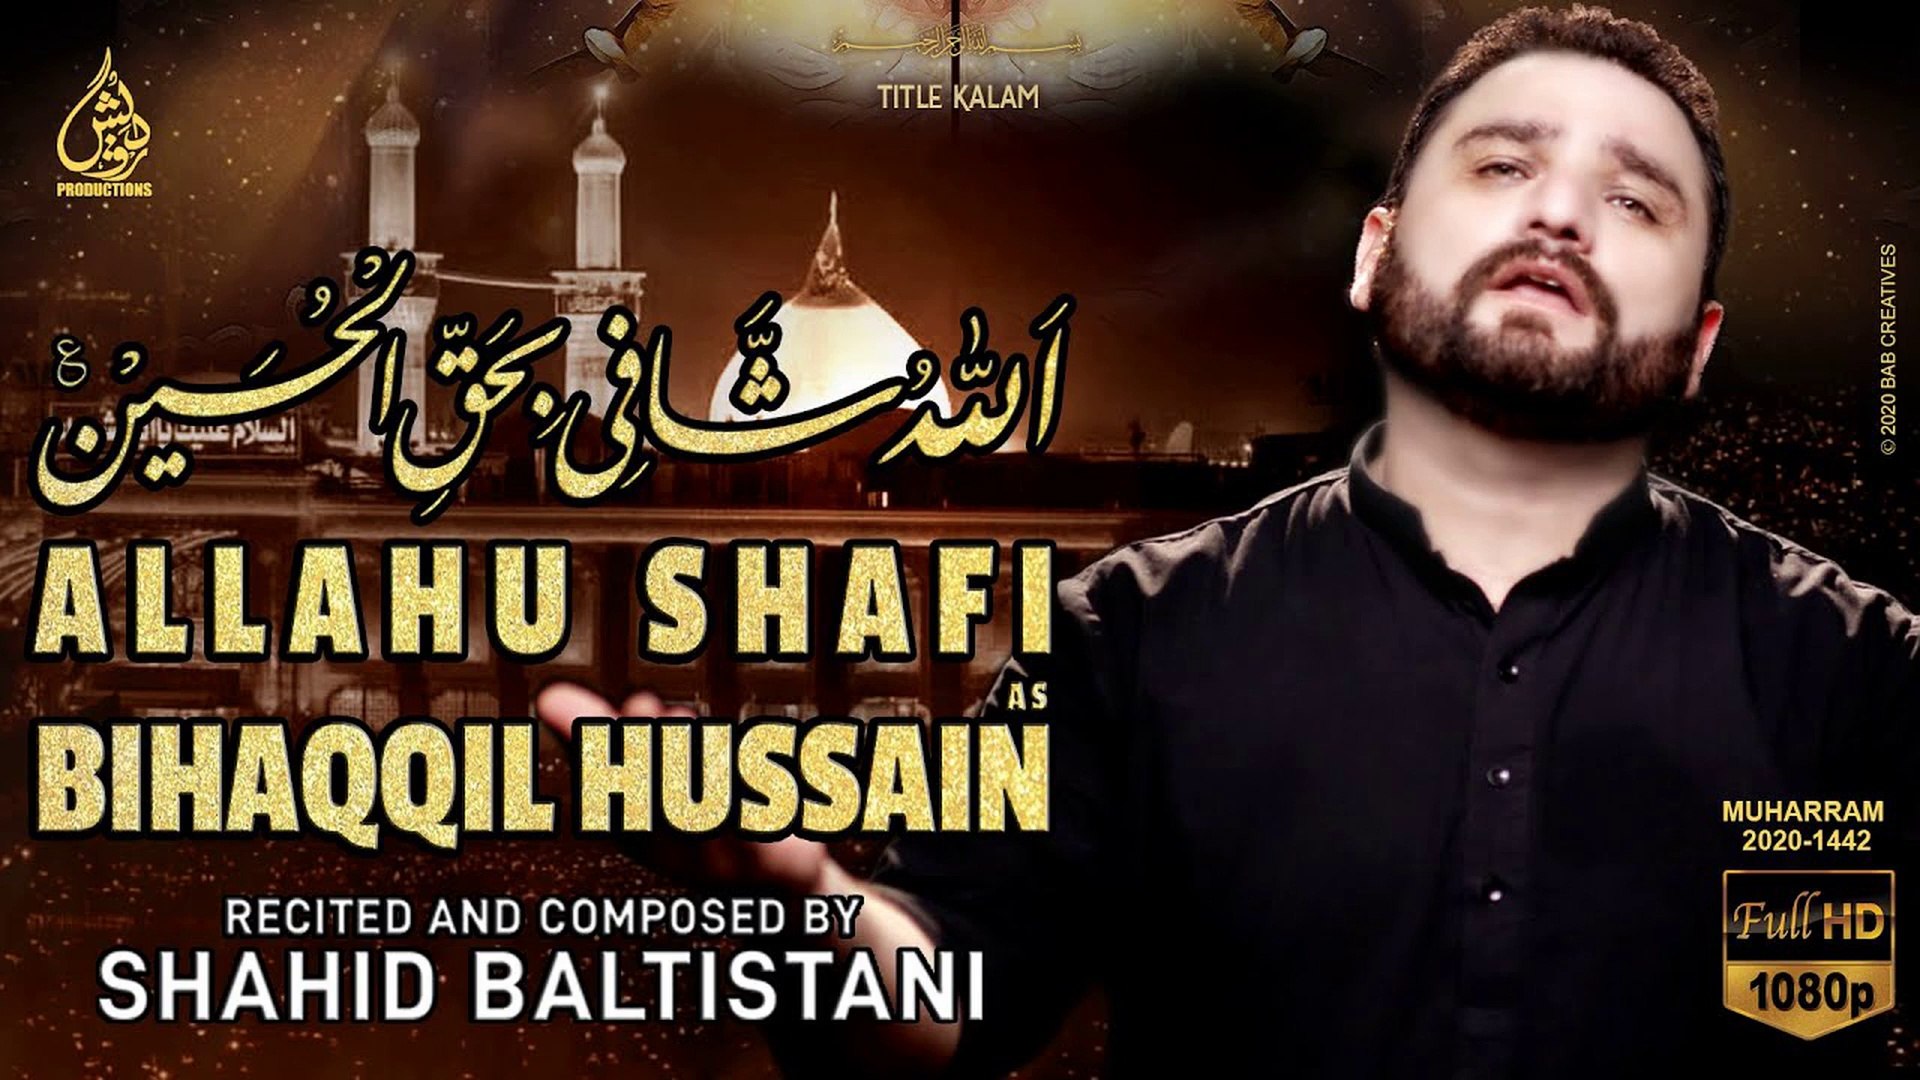 Allahu Shafi Bihaqqil Hussain as - Shahid Baltistani Nohay 2020 - New Nohay  2020 - Muharram 2020 - video Dailymotion